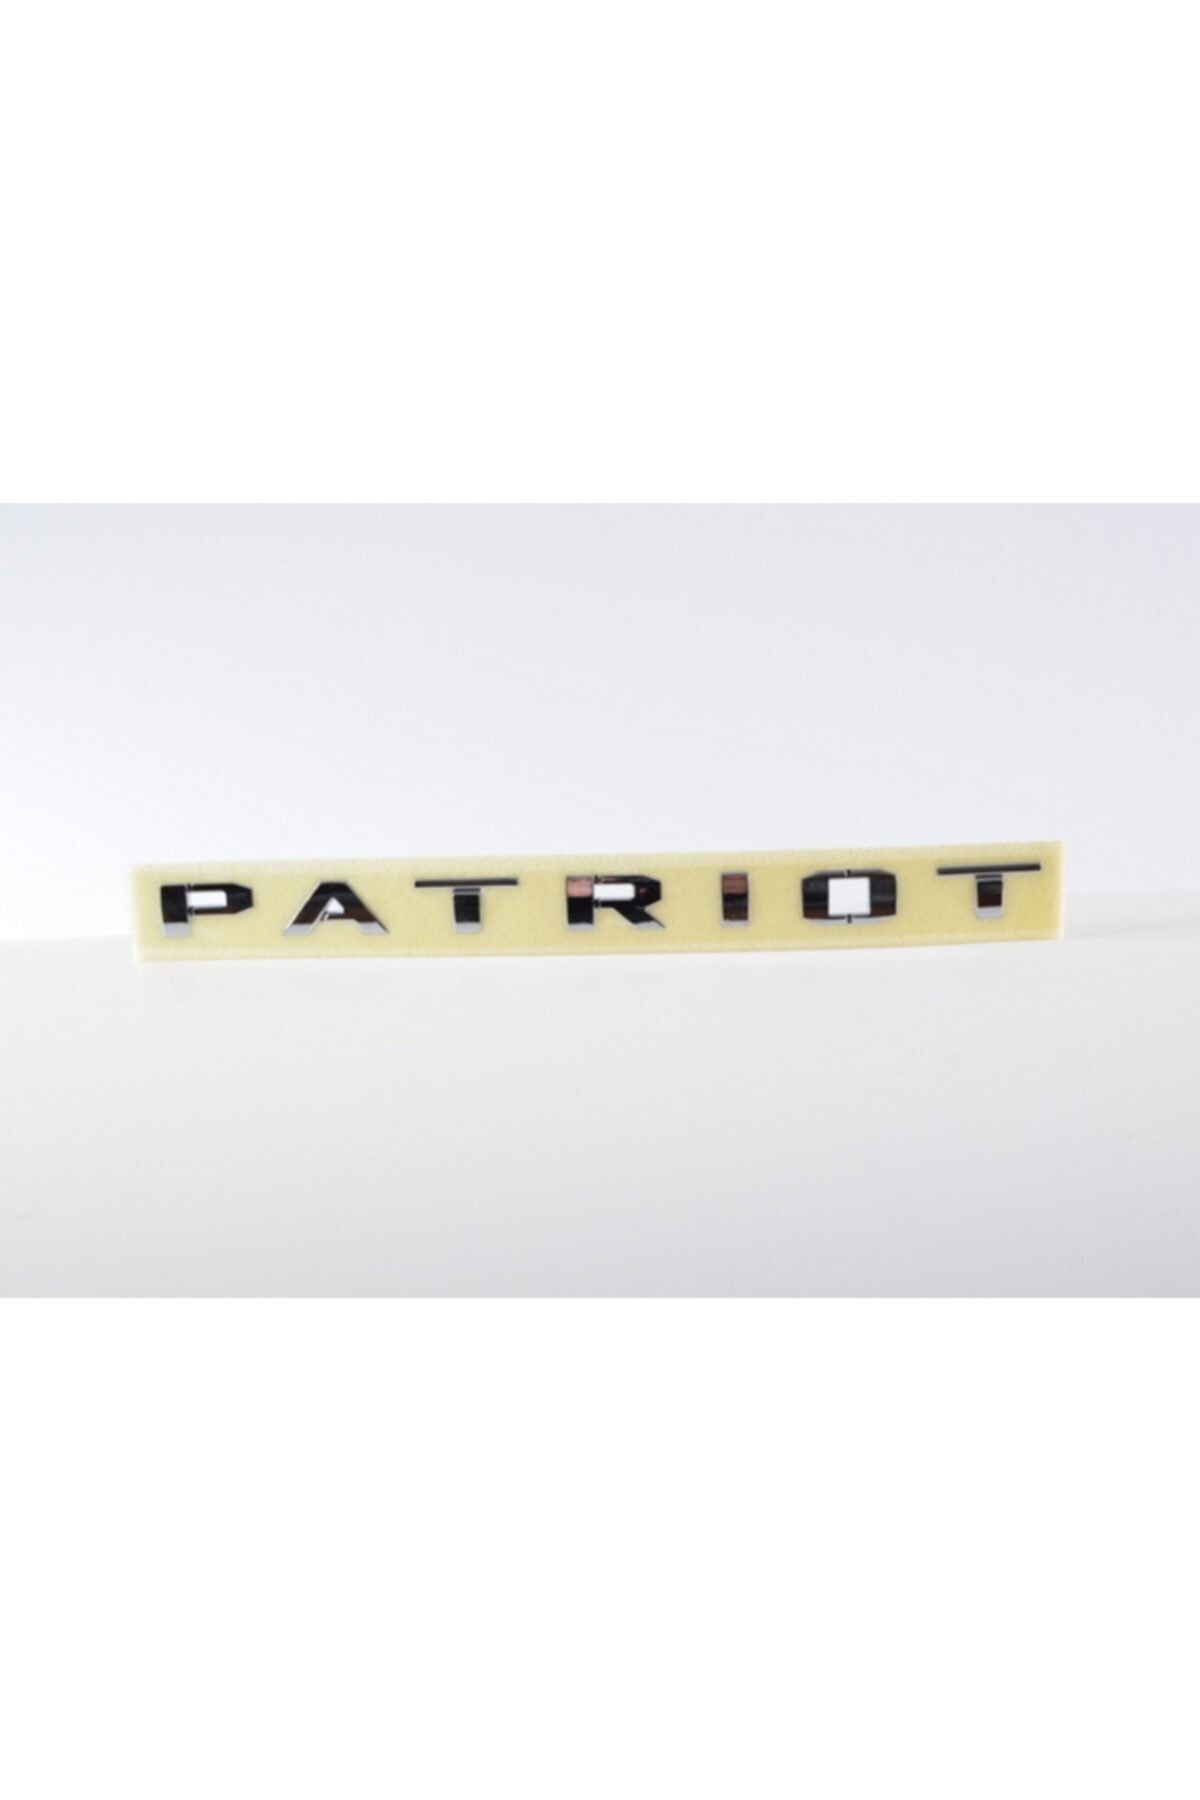 Genel Markalar Jeep Patriot Yazı